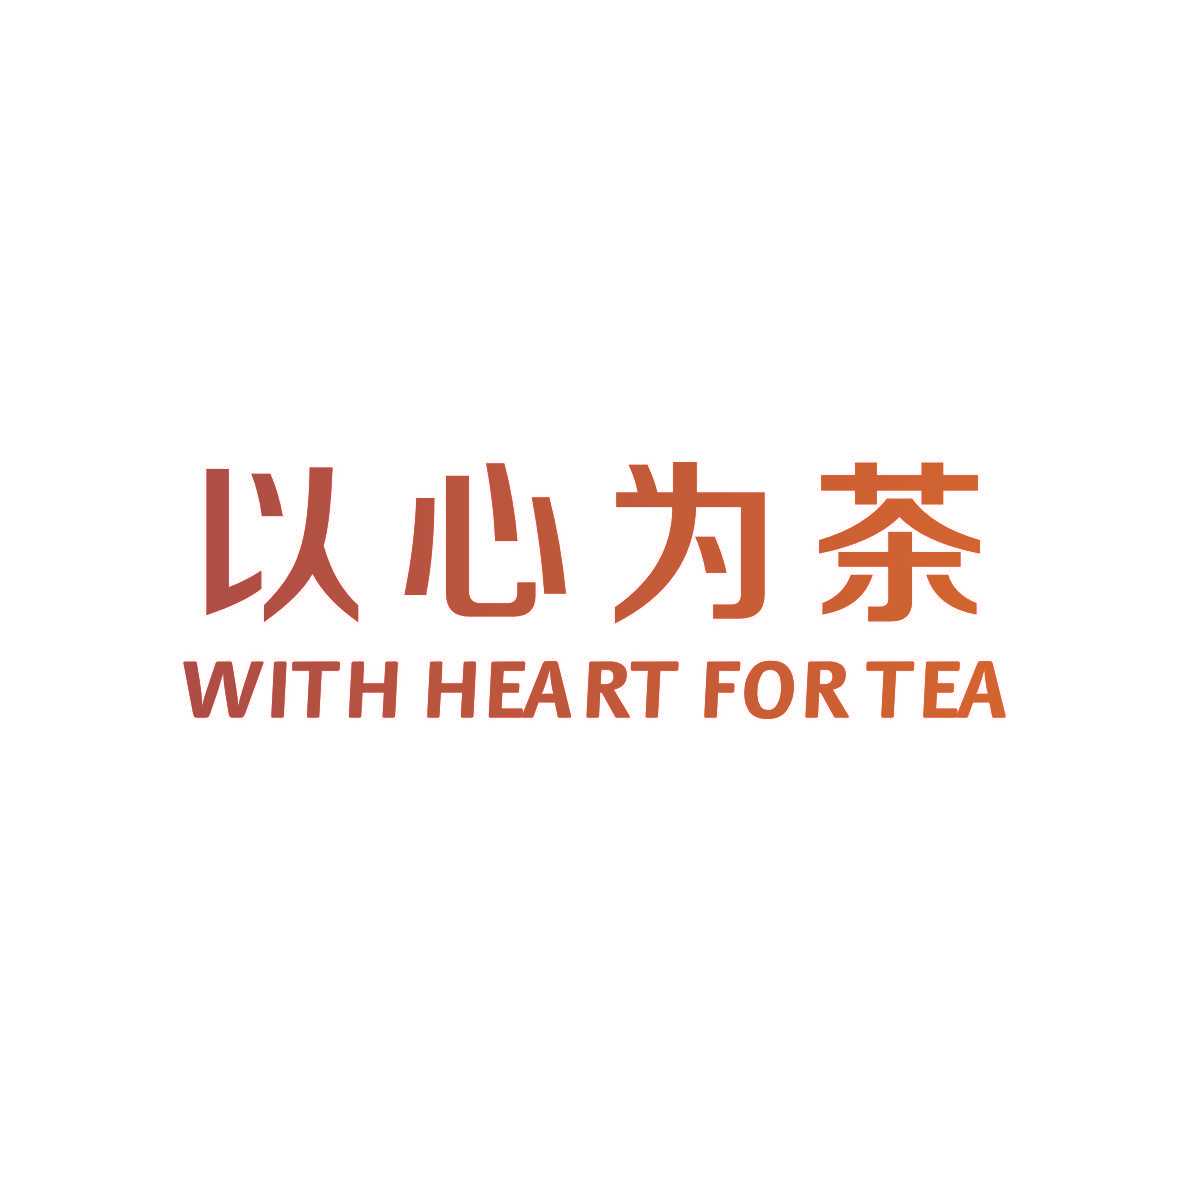 以心为茶 WITH HEART FOR TEA